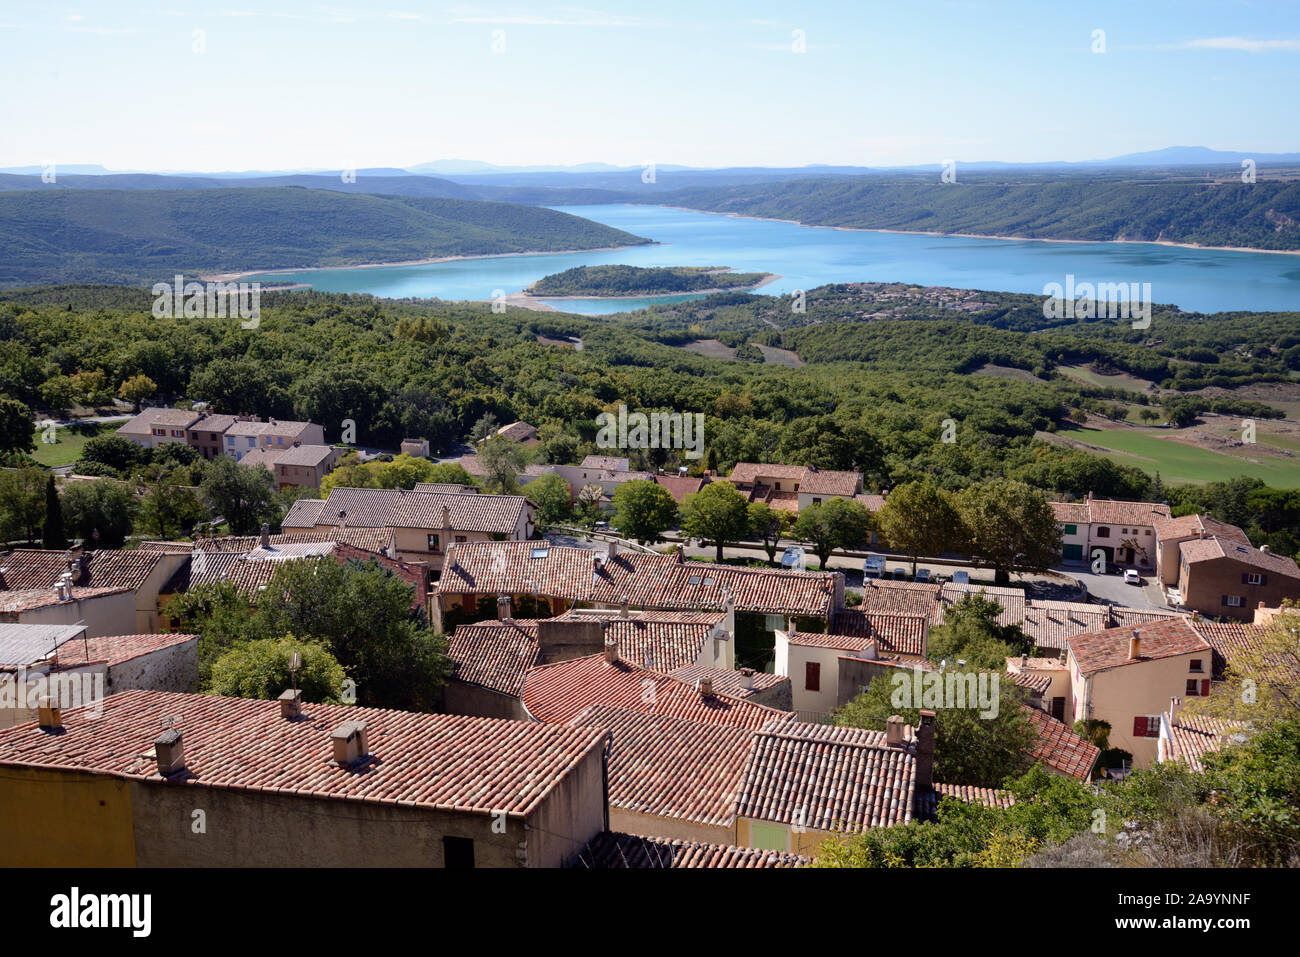 Vue panoramique sur les toits du village d'Aiguines & Lac de Sainte-Croix ou le Lac de Sainte-Croix Var Provence France Banque D'Images